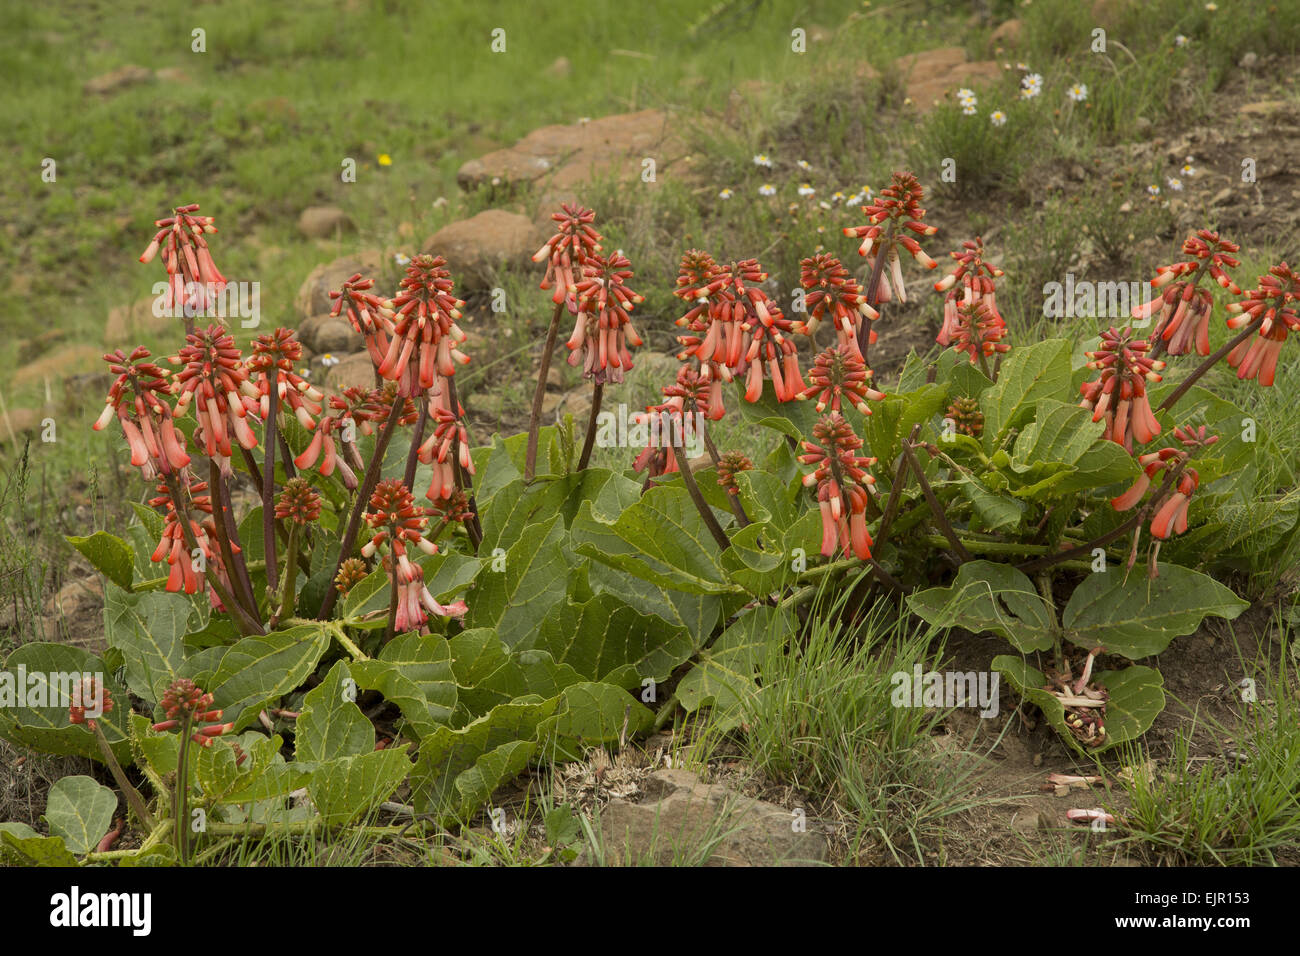 Plough-breaker (Erythrina zeyheri) flowering, South Africa, November Stock Photo